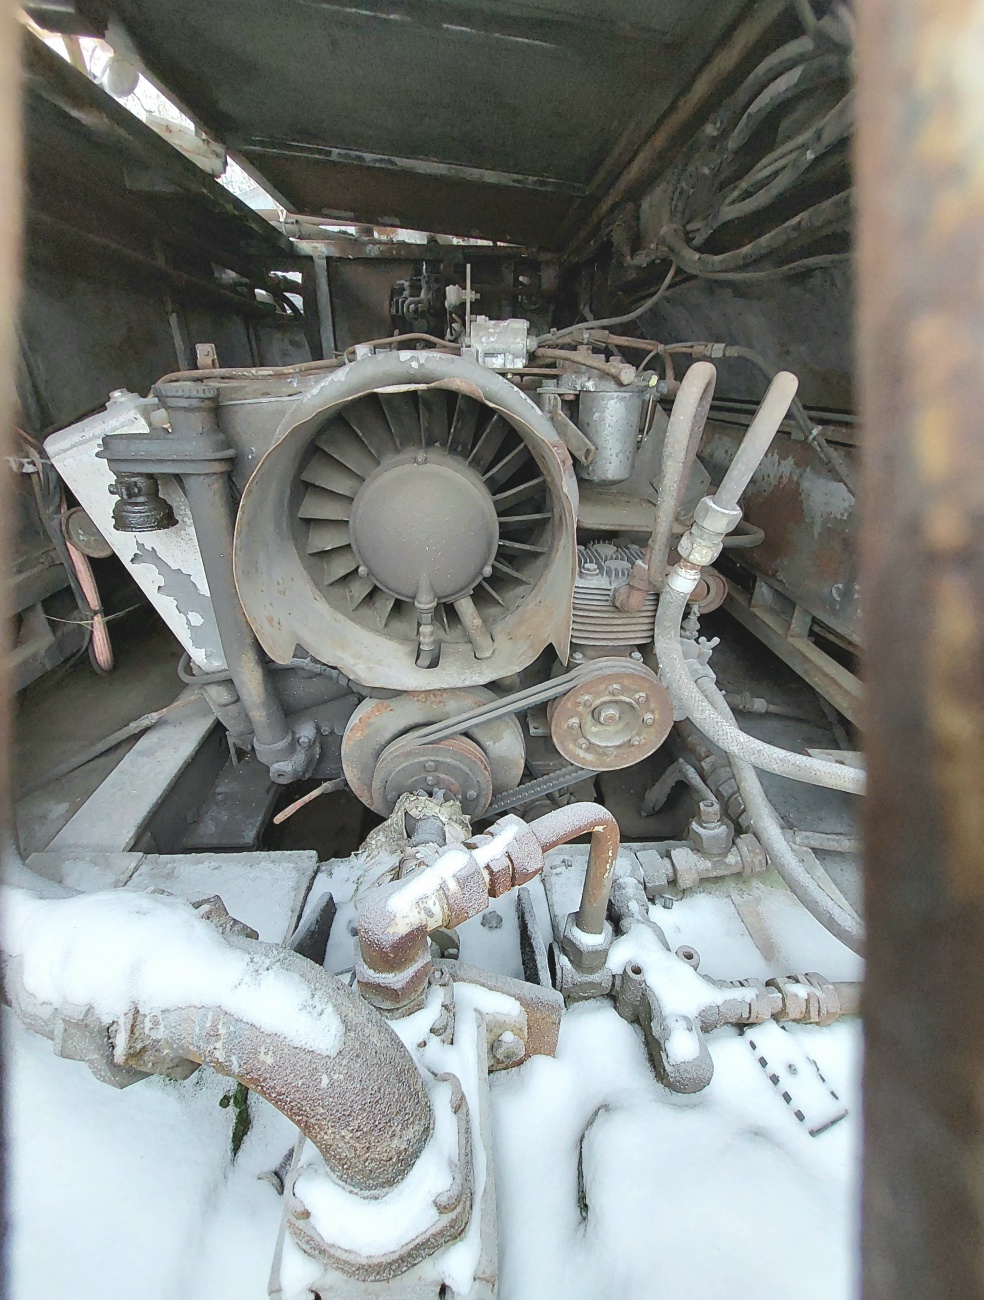 Foto: Martin Zehrer - Ein luftgekühlter Deutz Motor in einem Faun-LKW, der früher die Schlacke der Maxhütte transportierte. 